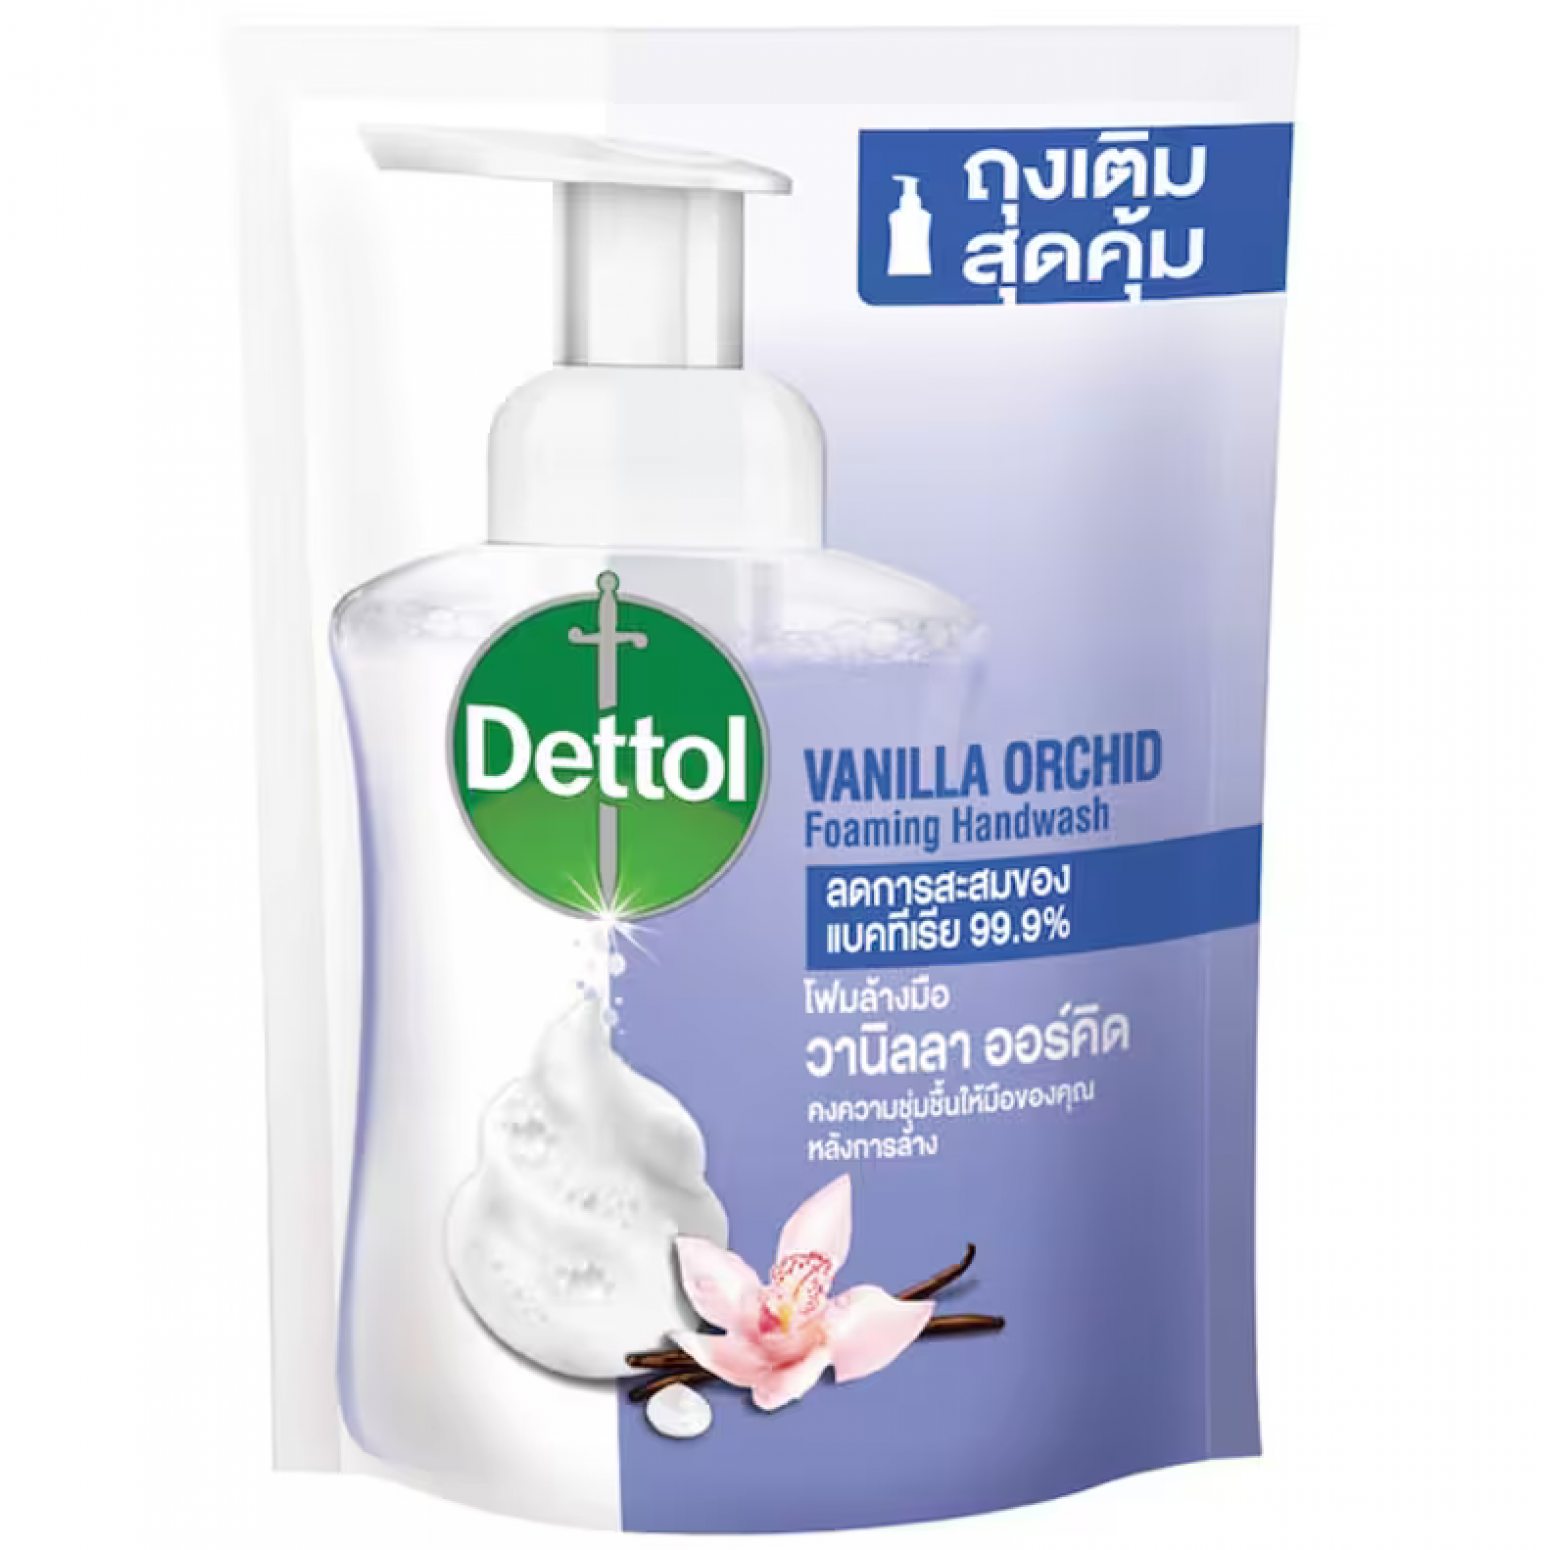 Dettol Foaming Handwash Vanilla Orchid 200ml. Refill